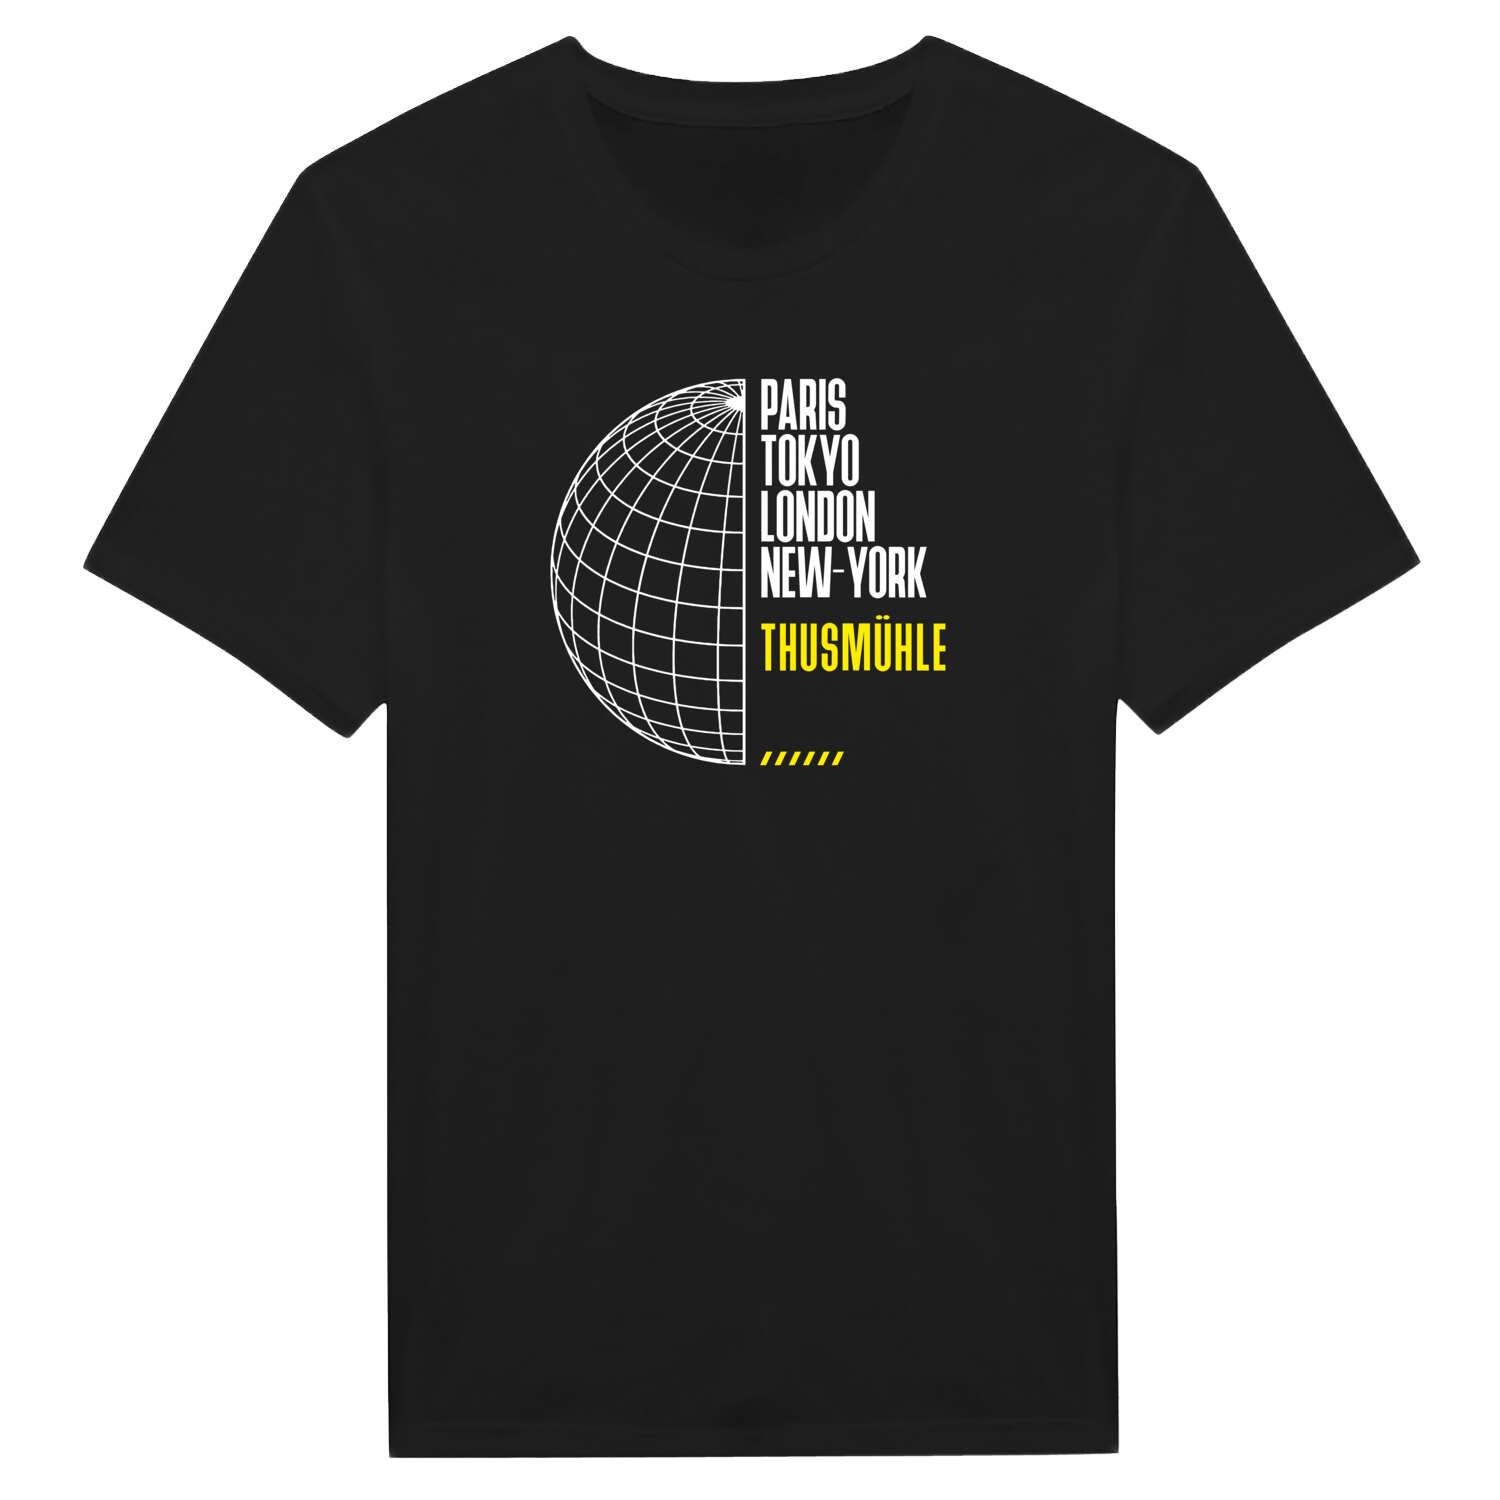 Thusmühle T-Shirt »Paris Tokyo London«